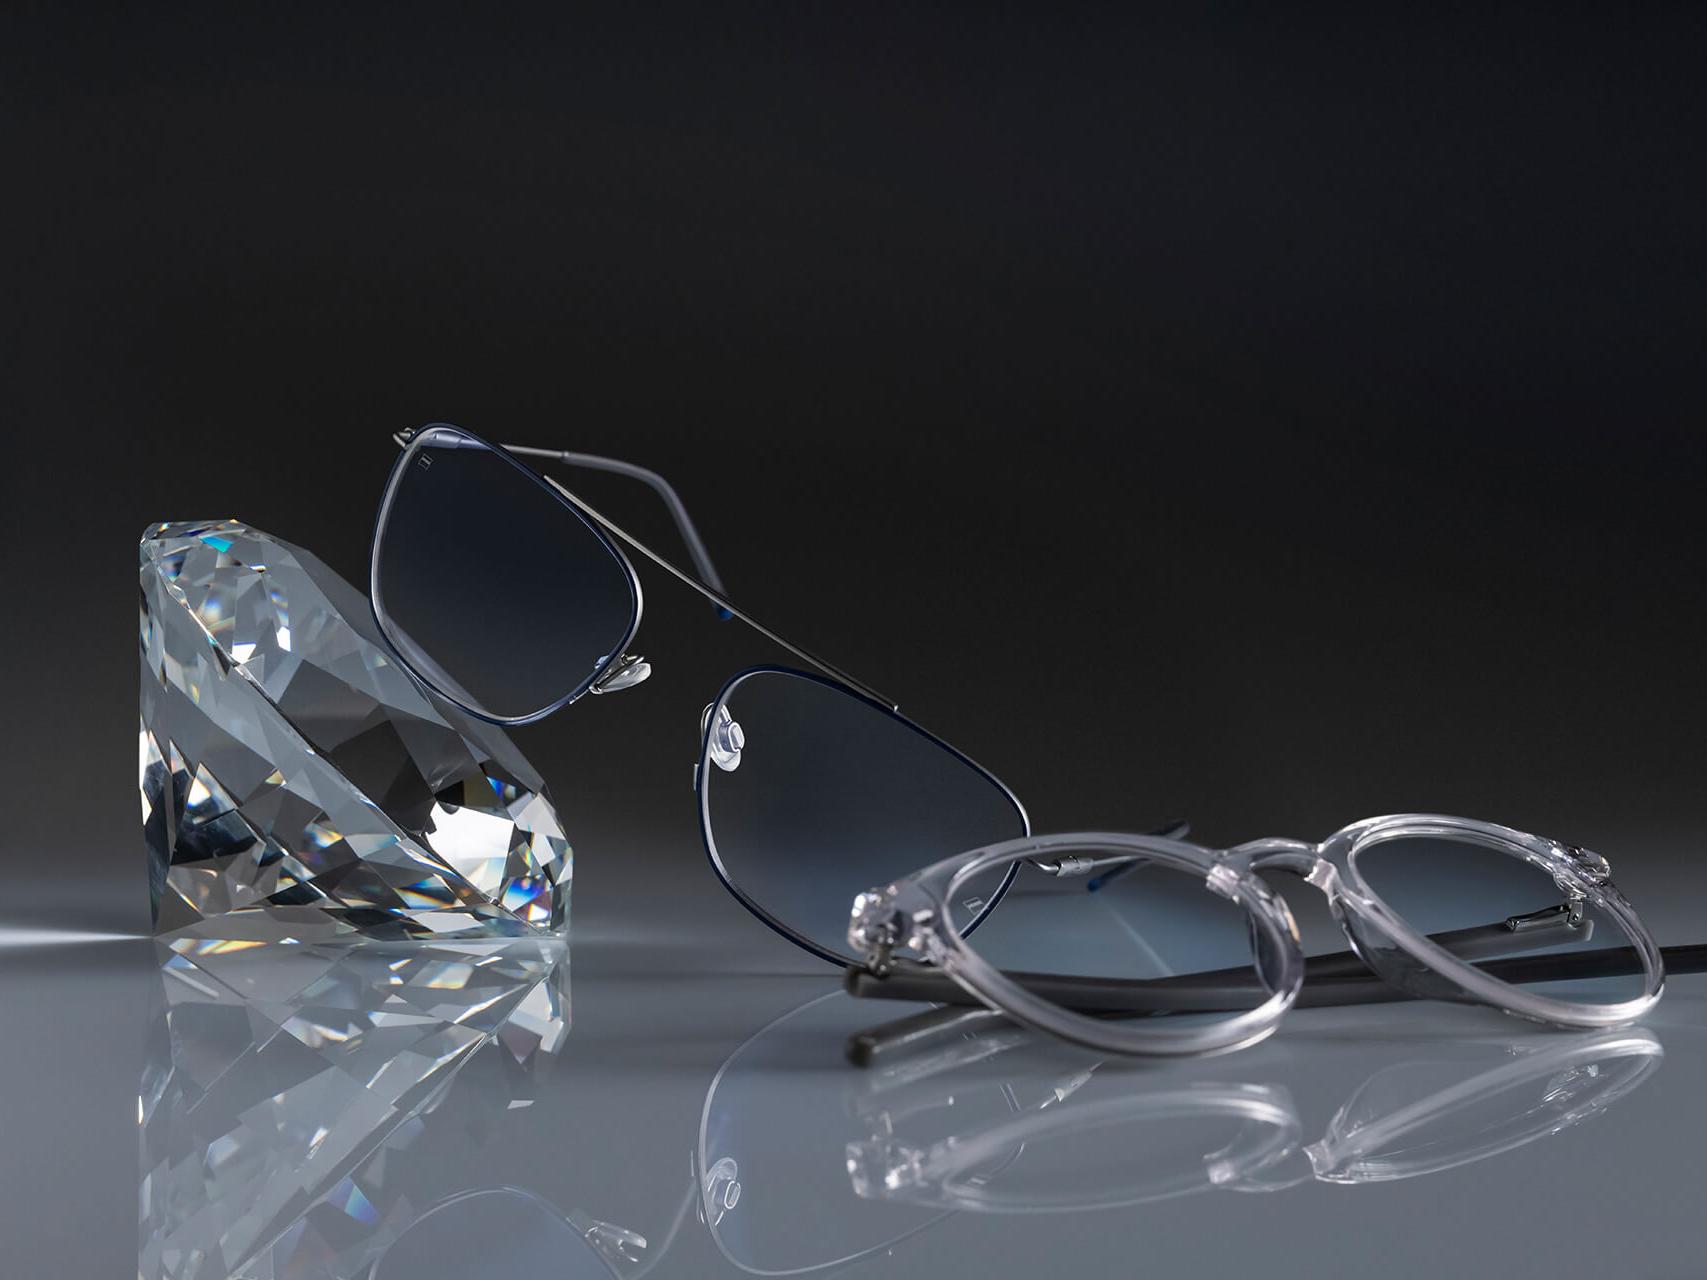 Deux paires de lunettes avec des verres ZEISS dotés du traitement ZEISS le plus résistant jamais réalisé – DuraVision® Platinum. Une paire de lunettes est appuyée contre un cristal, l’autre est posée à plat sur le sol. Tous deux disposent de verres transparents sans reflets bleutés.